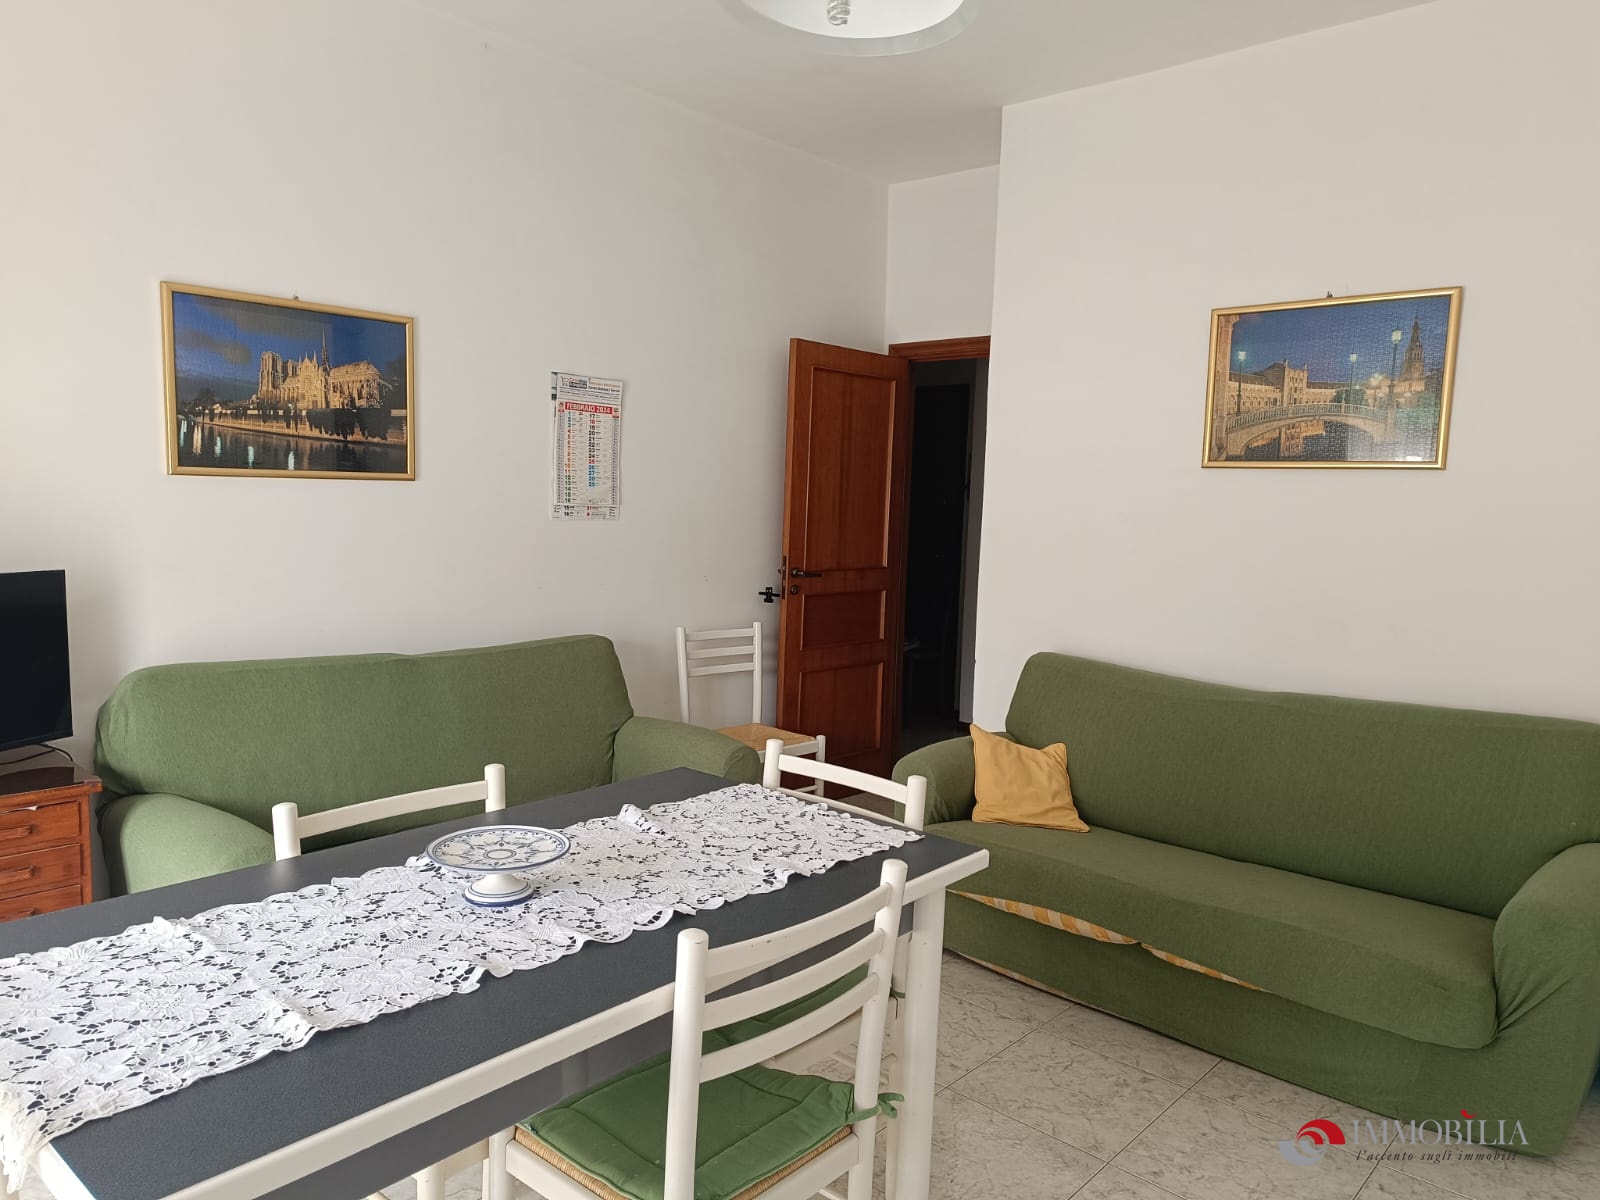 Appartamento in affitto a Melito di Porto Salvo, 3 locali, Trattative riservate | PortaleAgenzieImmobiliari.it